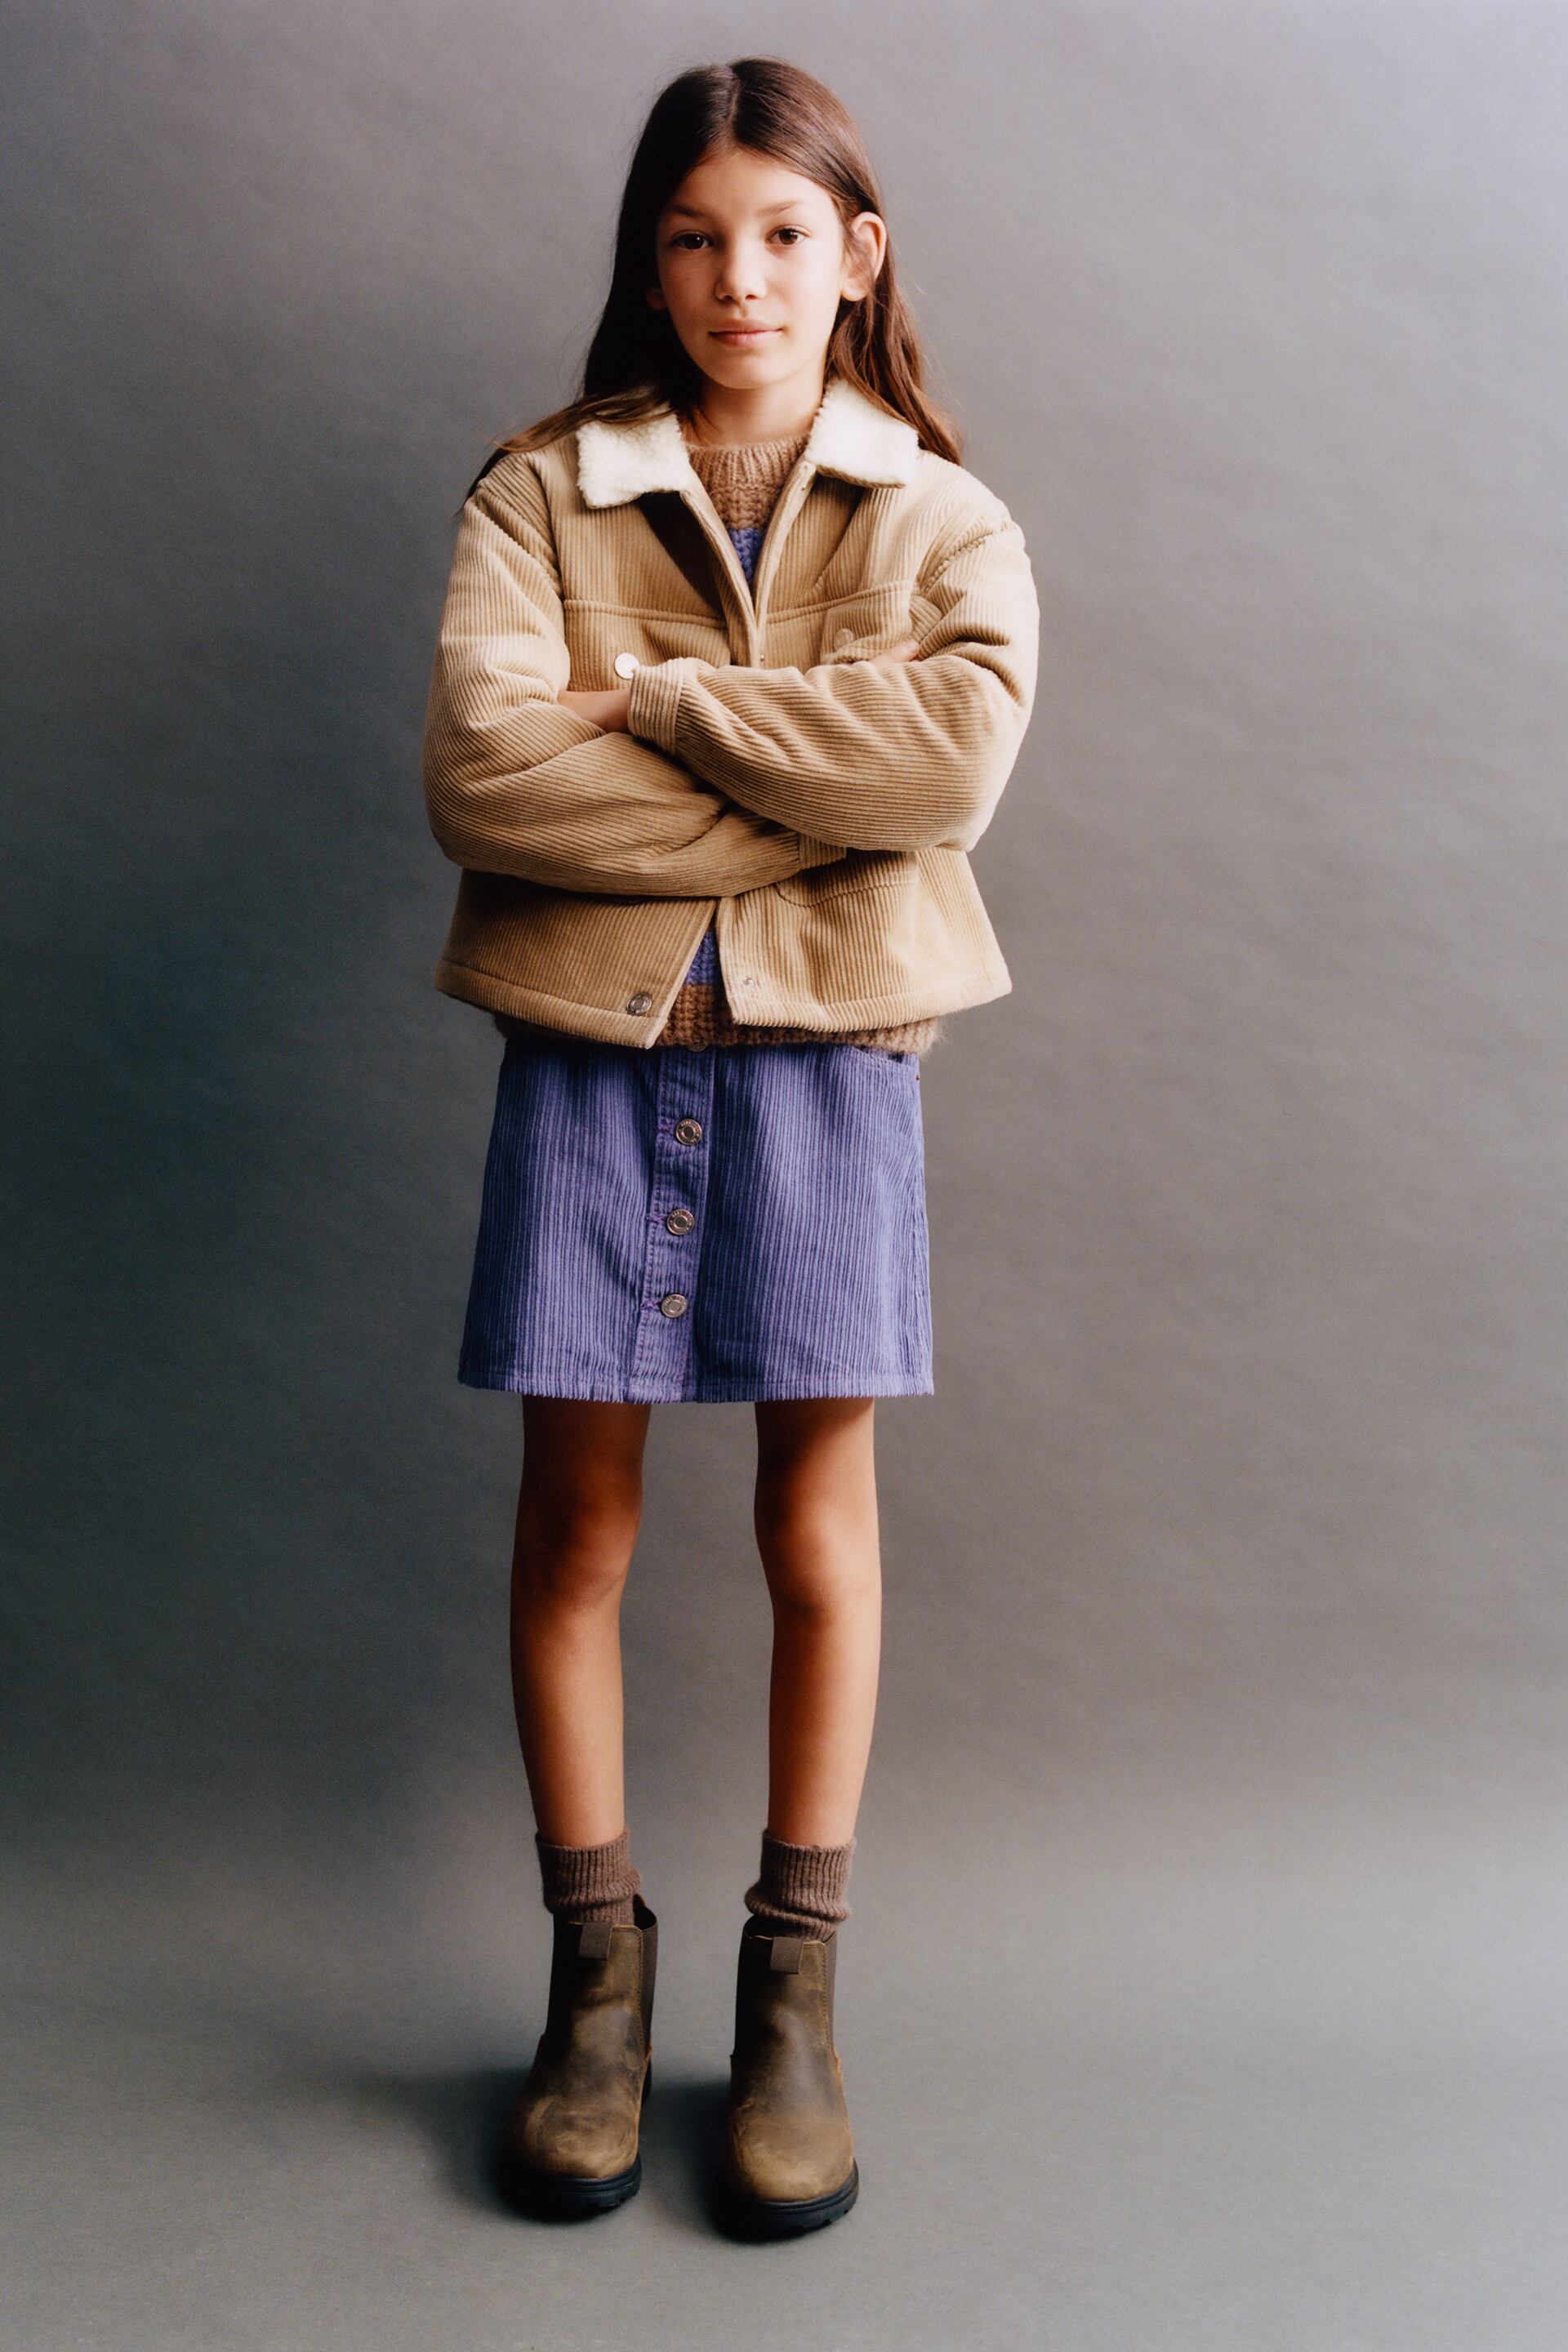 Découvrez la dernière collection Zara 2023 et leurs jolies jupes en velours côtelé à petit prix !